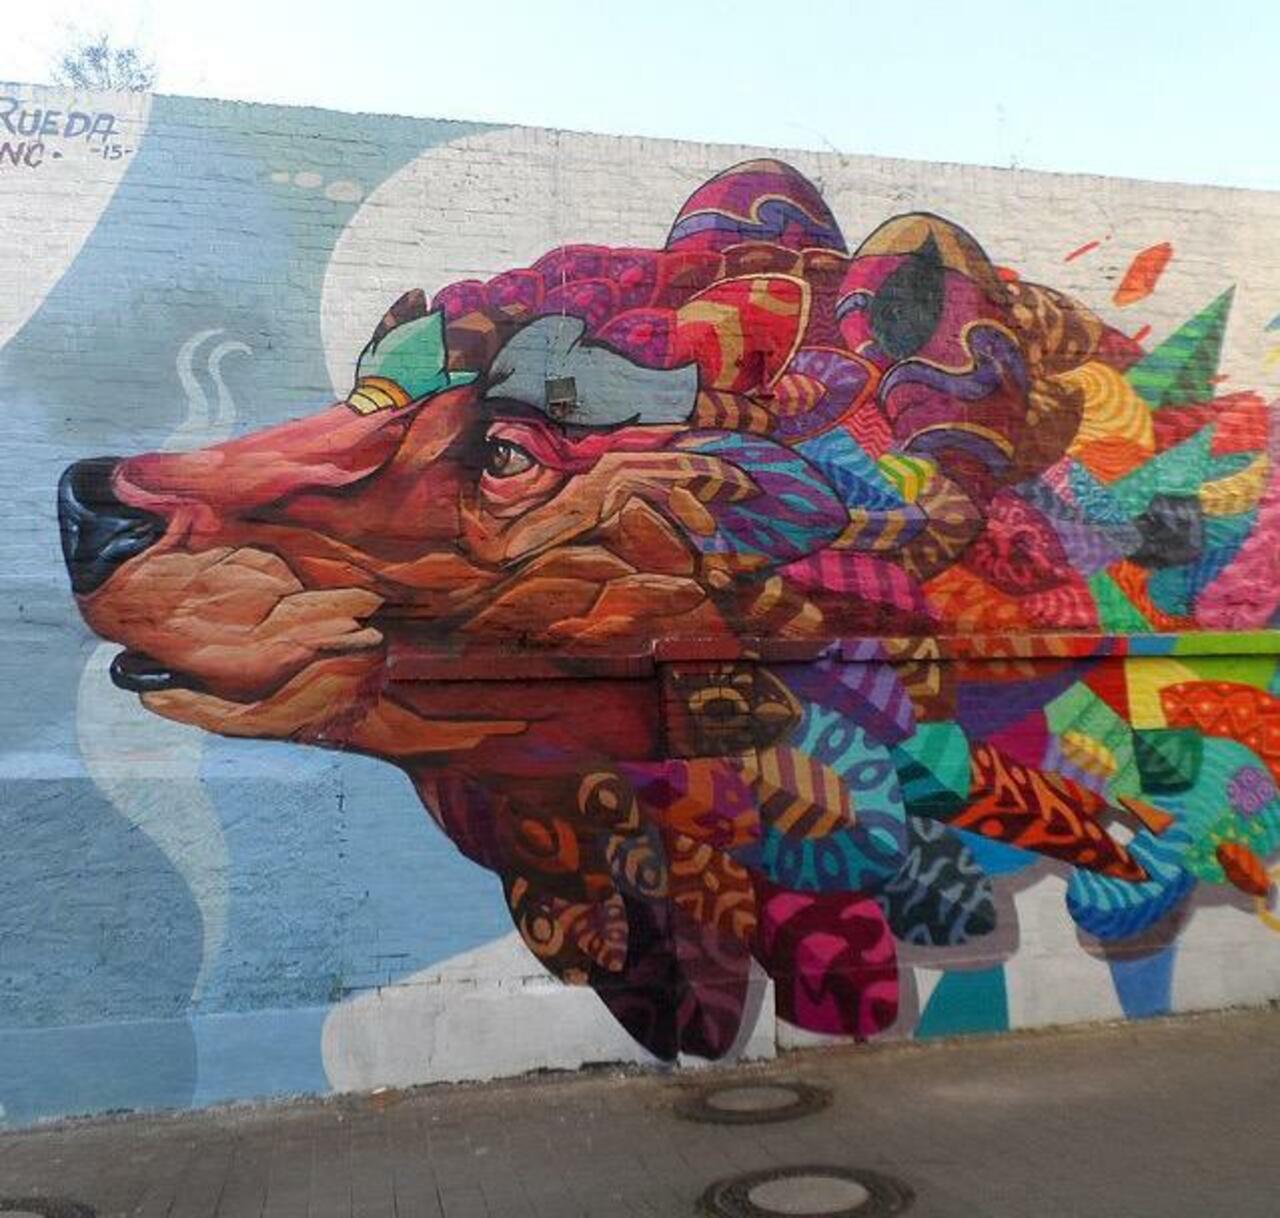 RT @GoogleStreetArt: Farid Rueda Street Art 

#art #graffiti #mural #streetart http://t.co/EiBOzcMw9M